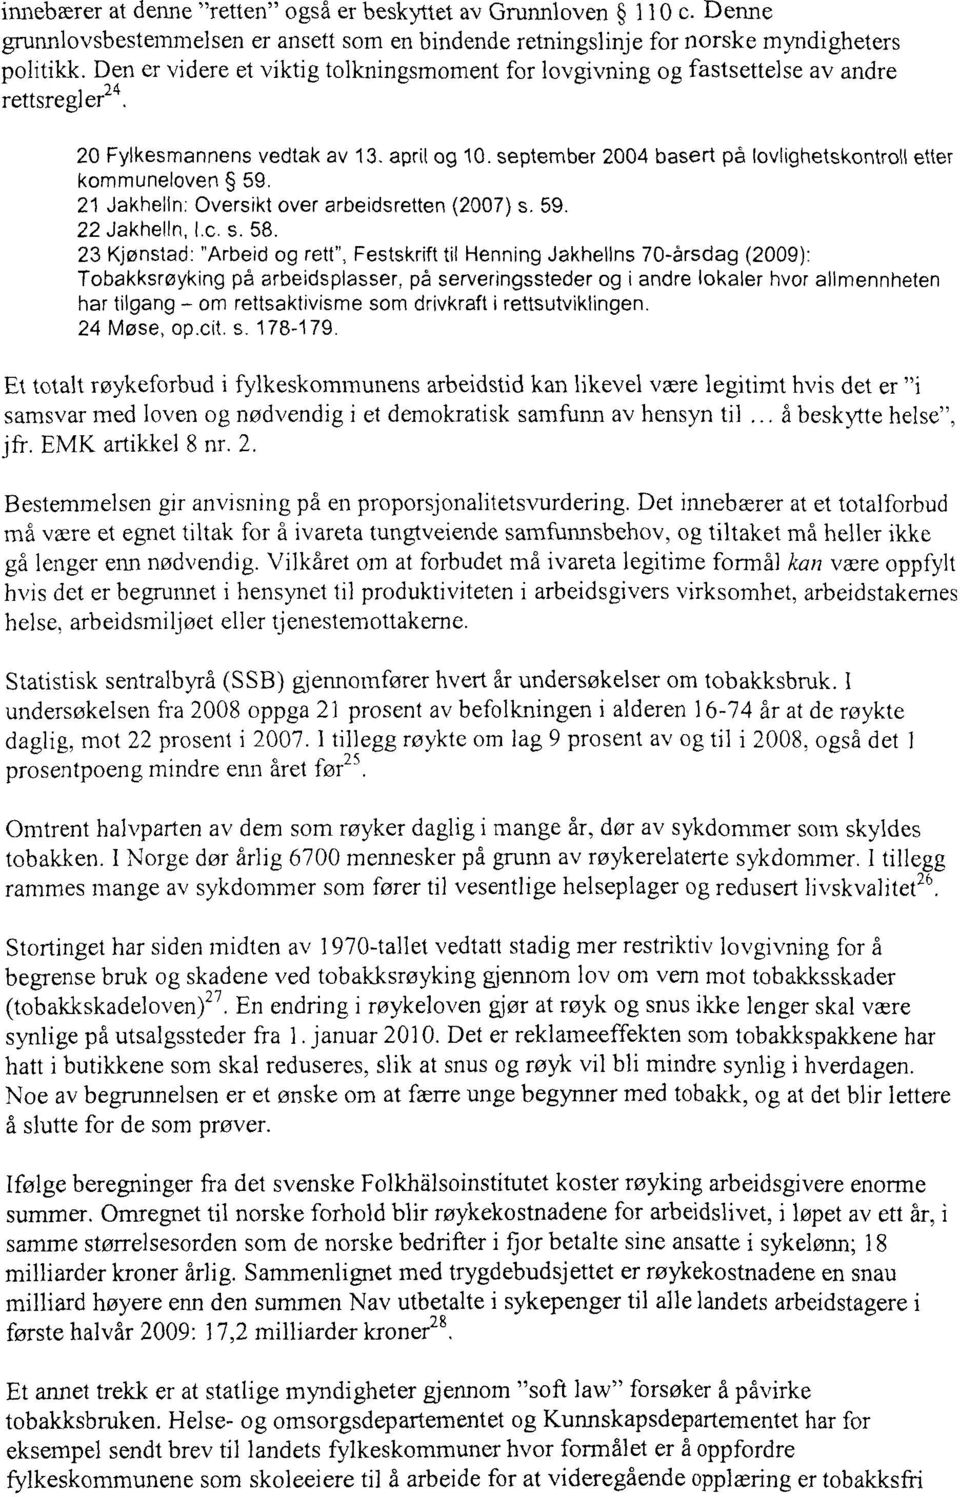 april og 10 september 2004 basert på lovlighetskontro44etter kommuneloven 59. 21 Jakhelln: Oversikt over arbeidsretten (2007) s. 59. 22 Jakhelln, I.c. s. 58.